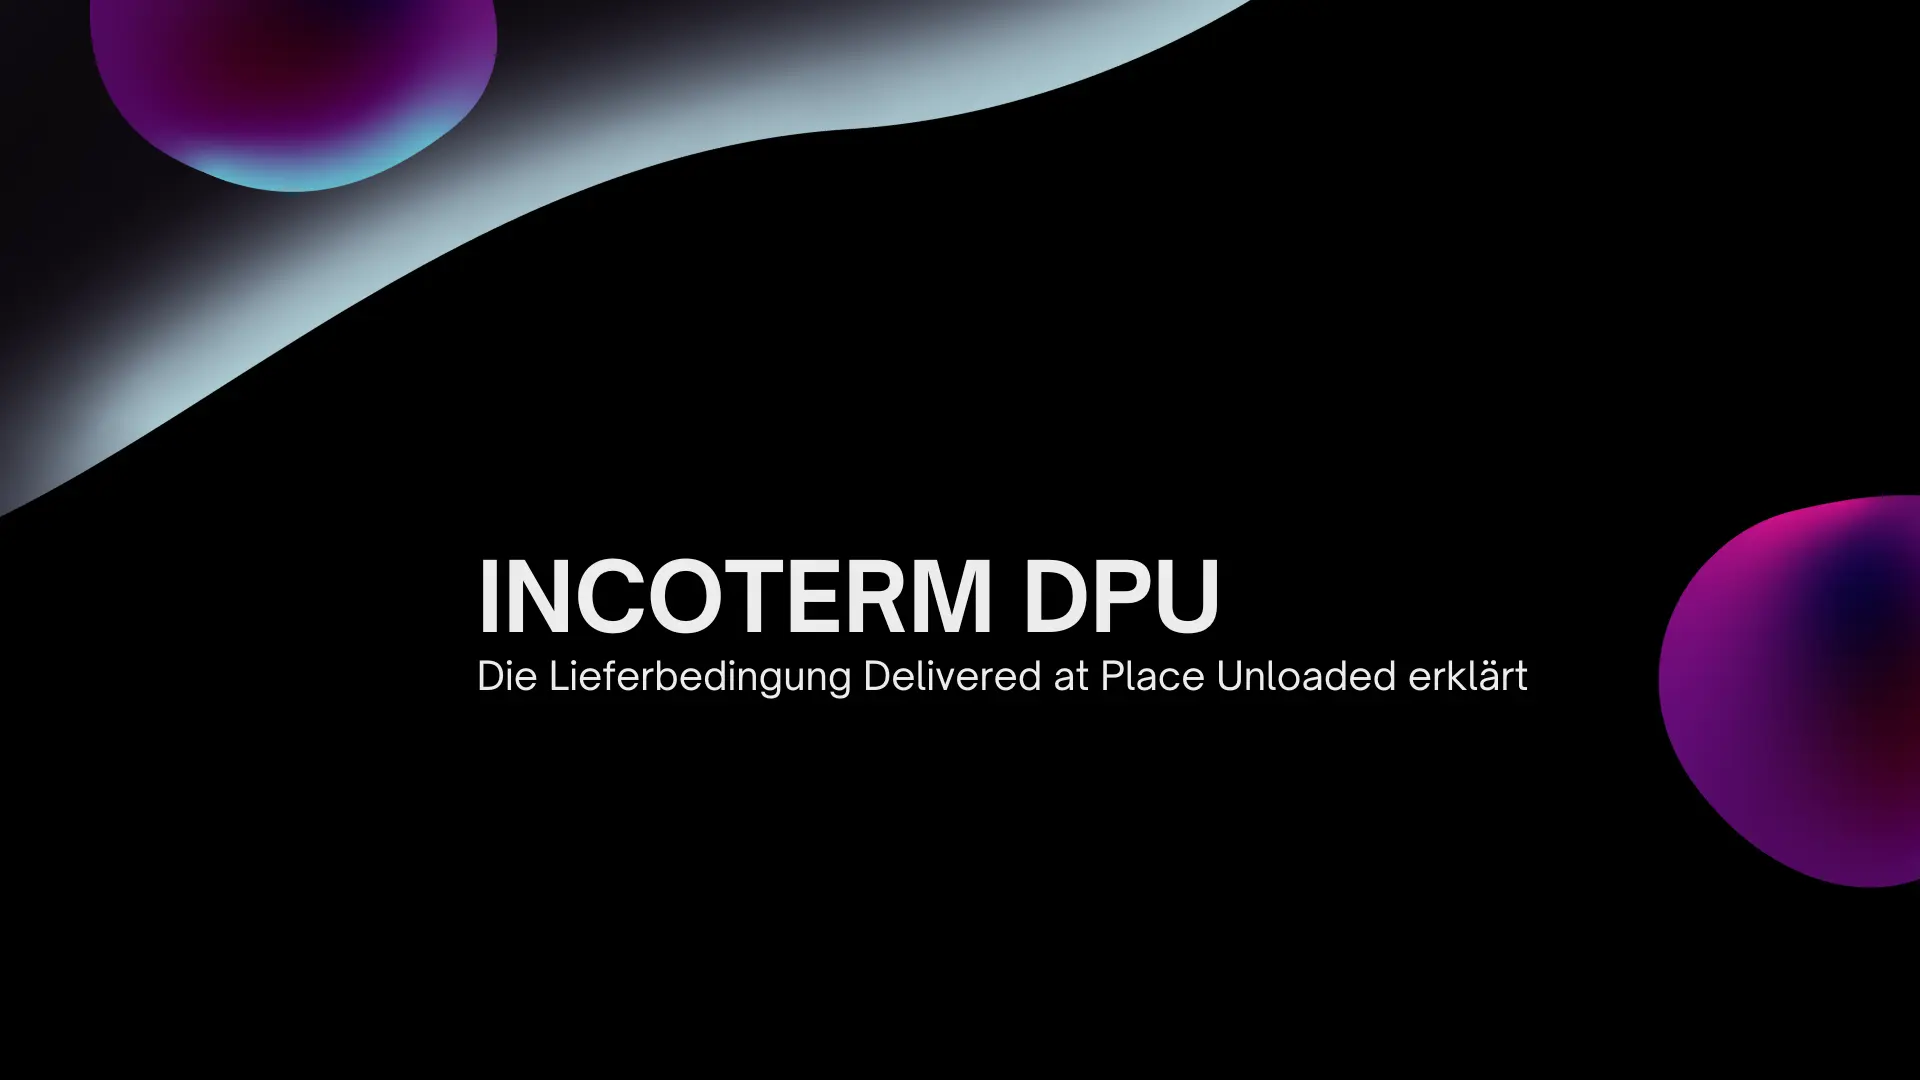 Incoterm DPU – Eine umfassende Analyse der Lieferbedingung Delivered at Place Unloaded